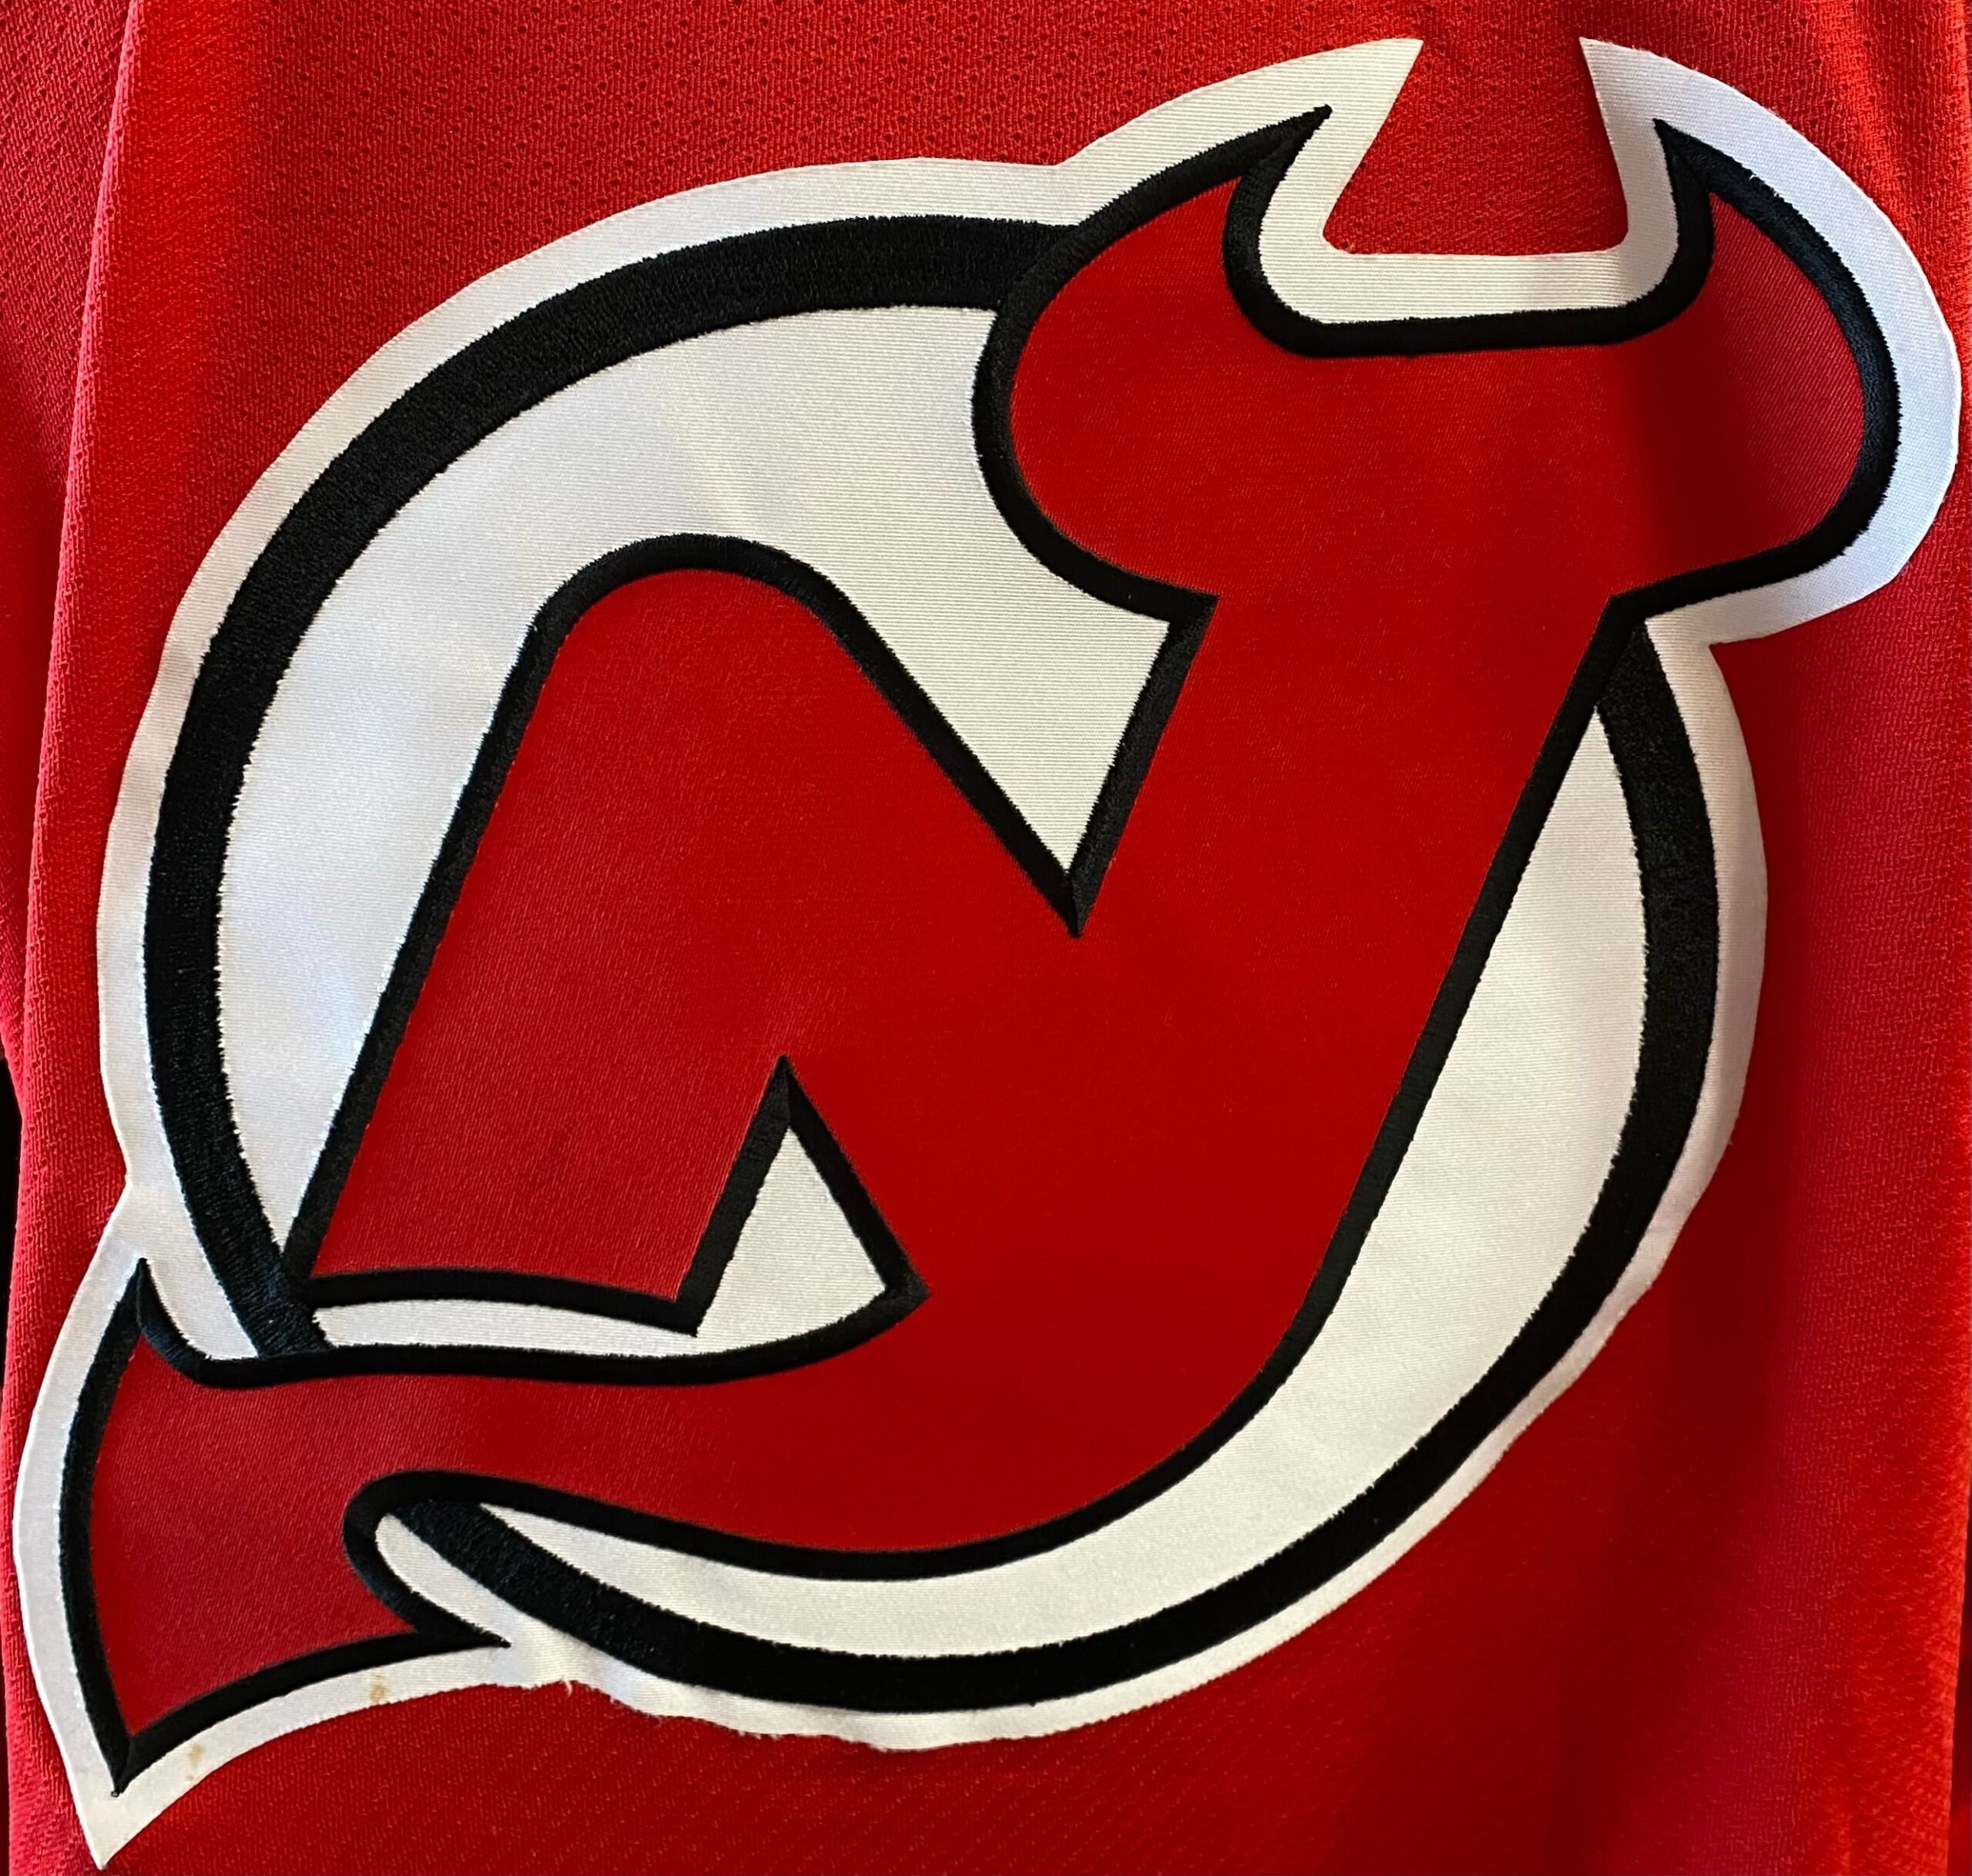 Zach Parise Signed New Jersey Devils Logo Hockey Puck (Steiner Hologra –